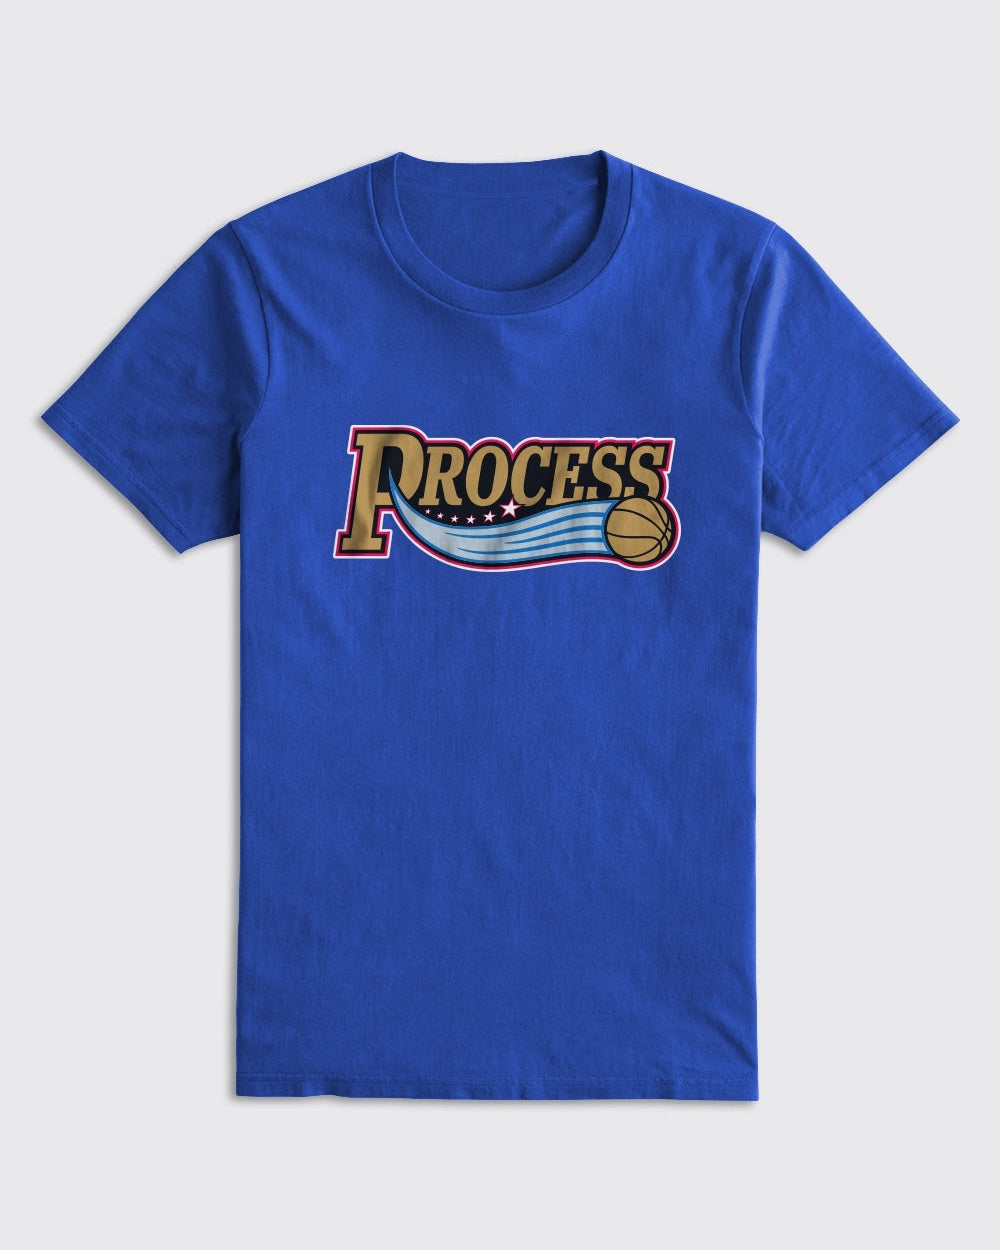 Process Logo Shirt